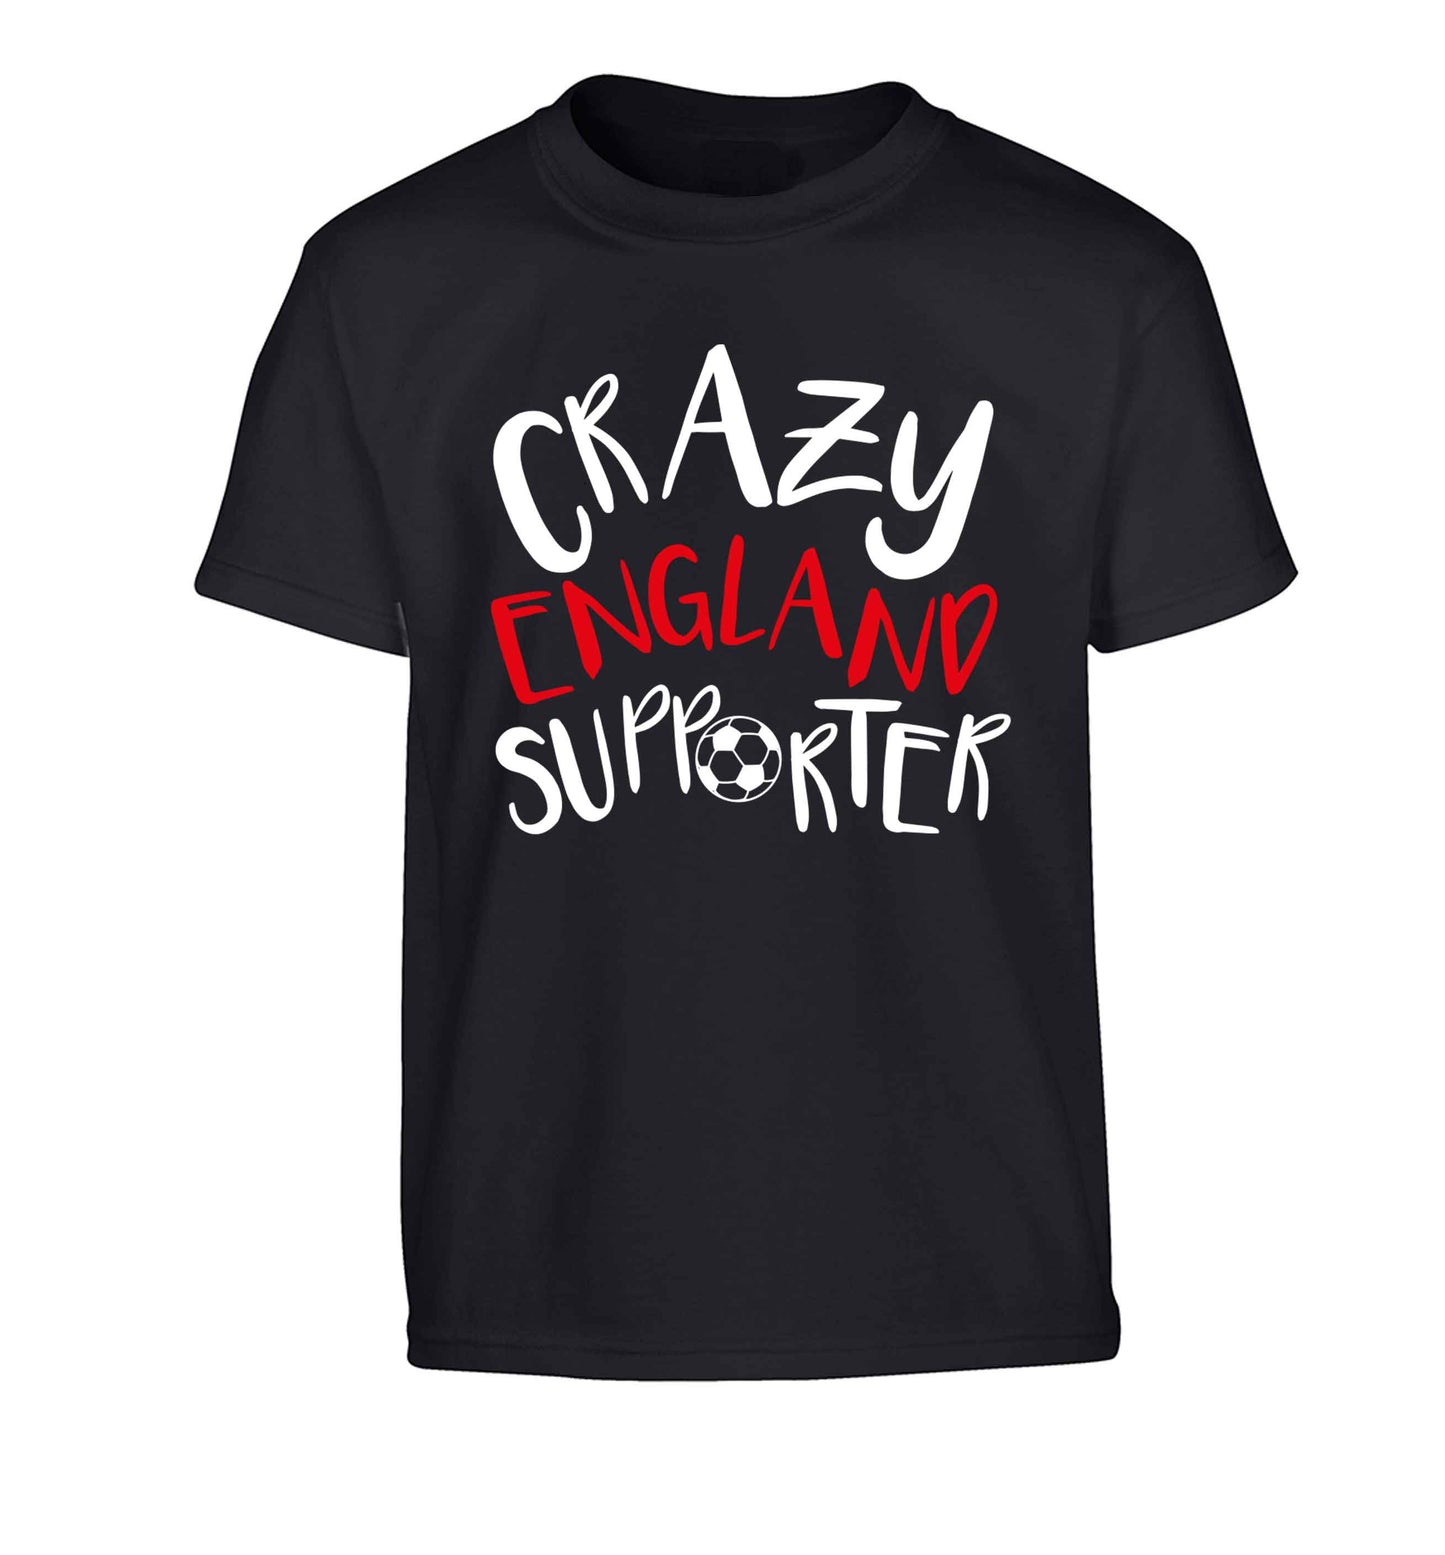 Crazy England supporter Children's black Tshirt 12-13 Years